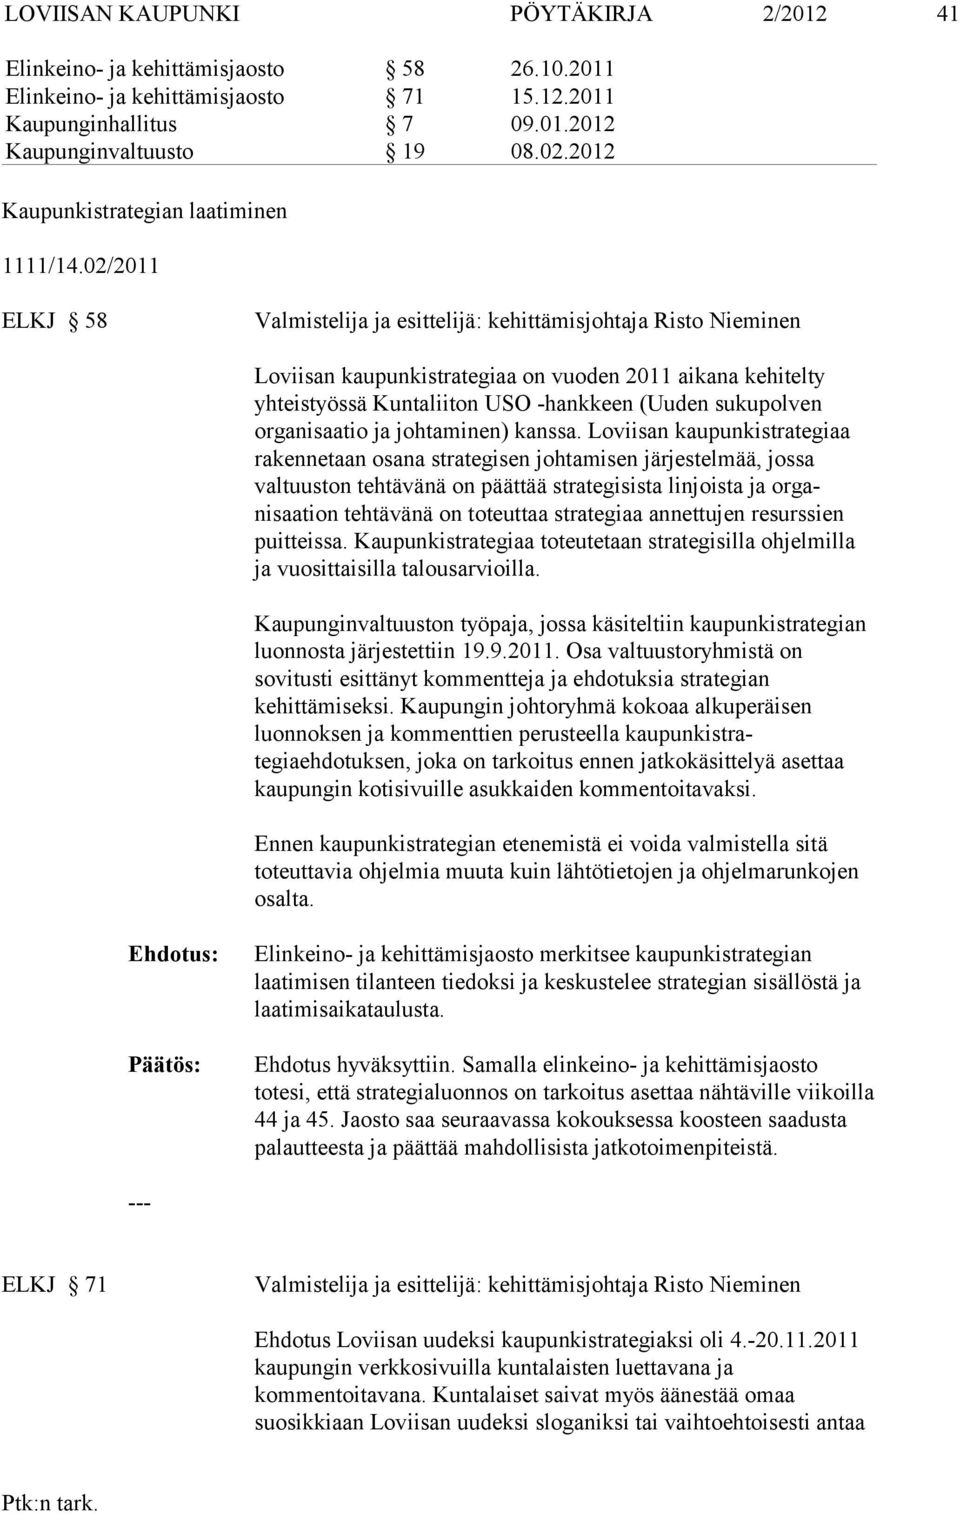 02/2011 ELKJ 58 Valmistelija ja esittelijä: kehittämisjohtaja Risto Nieminen Loviisan kaupunkistrategiaa on vuoden 2011 aikana kehitelty yhteistyössä Kuntaliiton USO -hankkeen (Uuden sukupolven